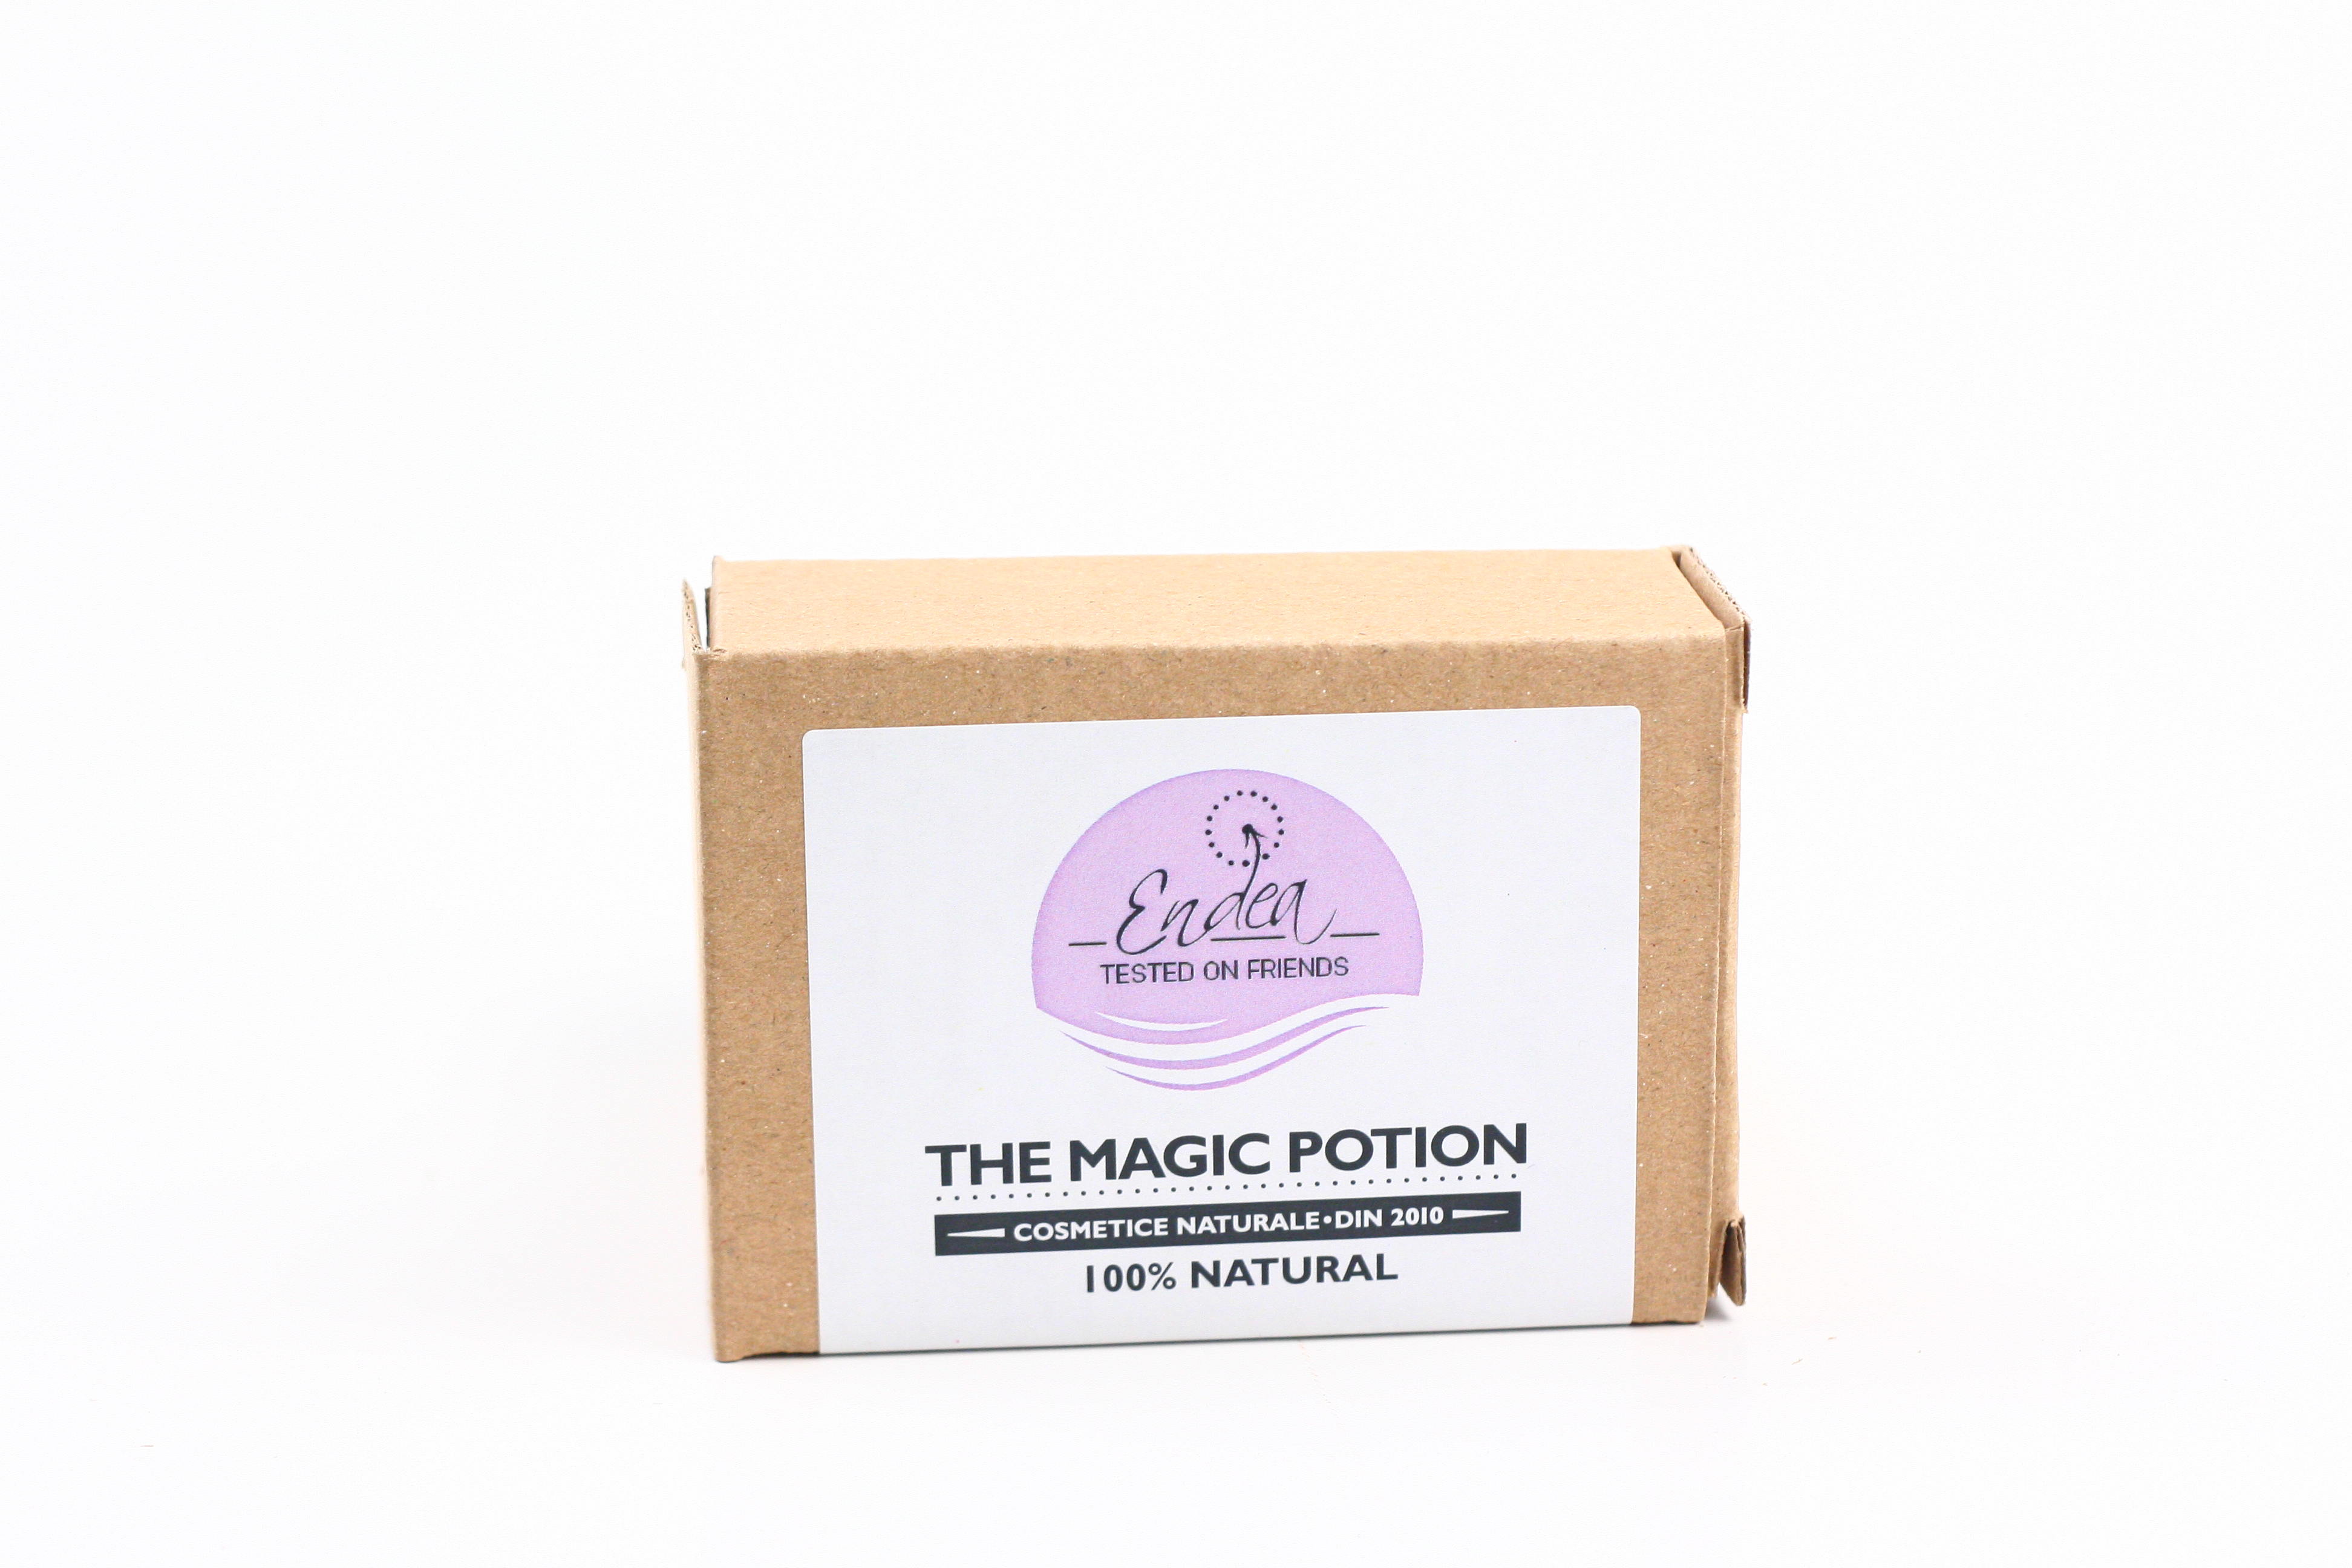 Sapun magic cu mirodenii si cafea - The Magic Potion thumbnail